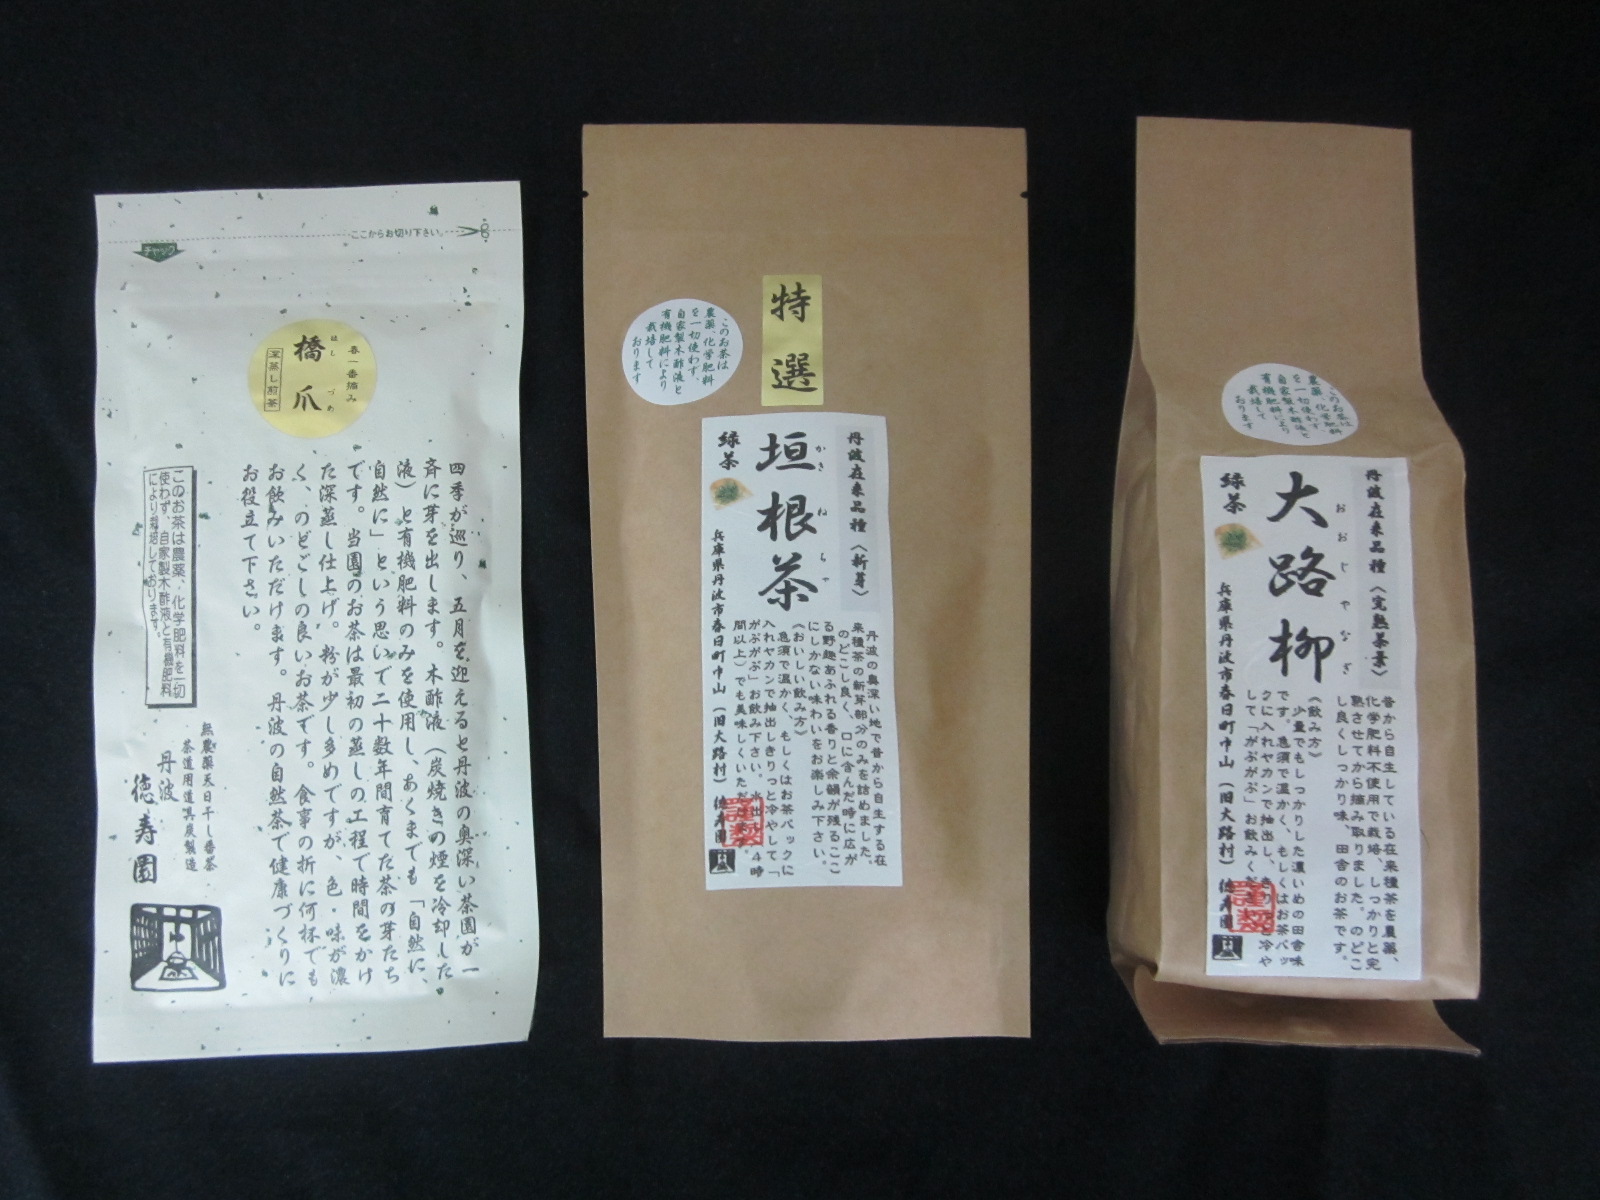 (左から) 無農薬上煎茶・橋爪・丹波在来種の特選垣根茶と大路柳